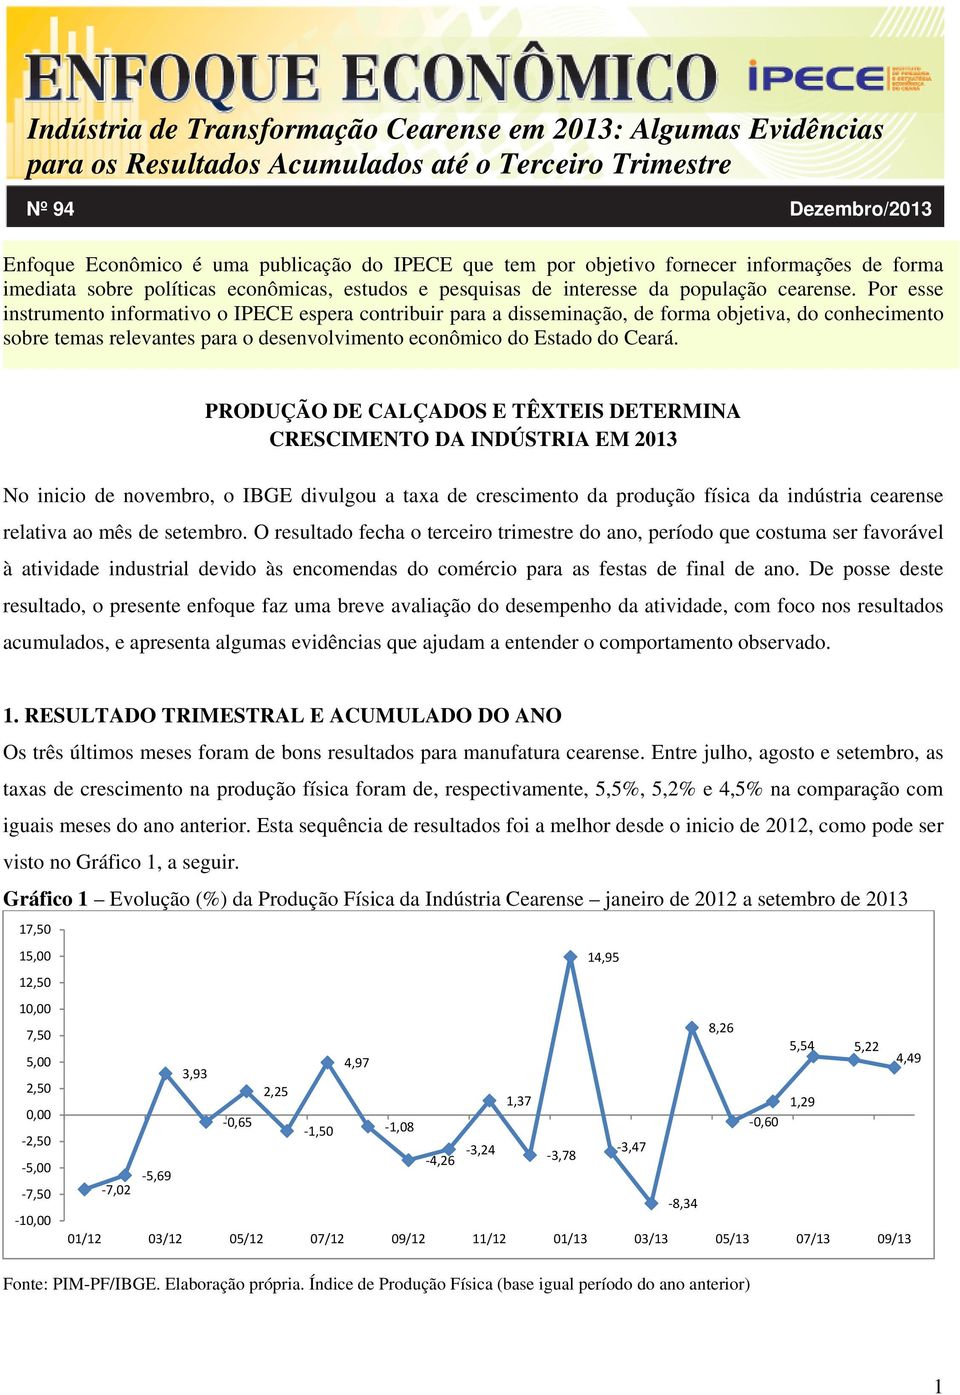 PRODUÇÃO DE CALÇADOS E TÊXTEIS DETERMINA CRESCIMENTO DA INDÚSTRIA EM 2013 No inicio de novembro, o IBGE divulgou a taxa de crescimento da produção física da indústria cearense relativa ao mês de